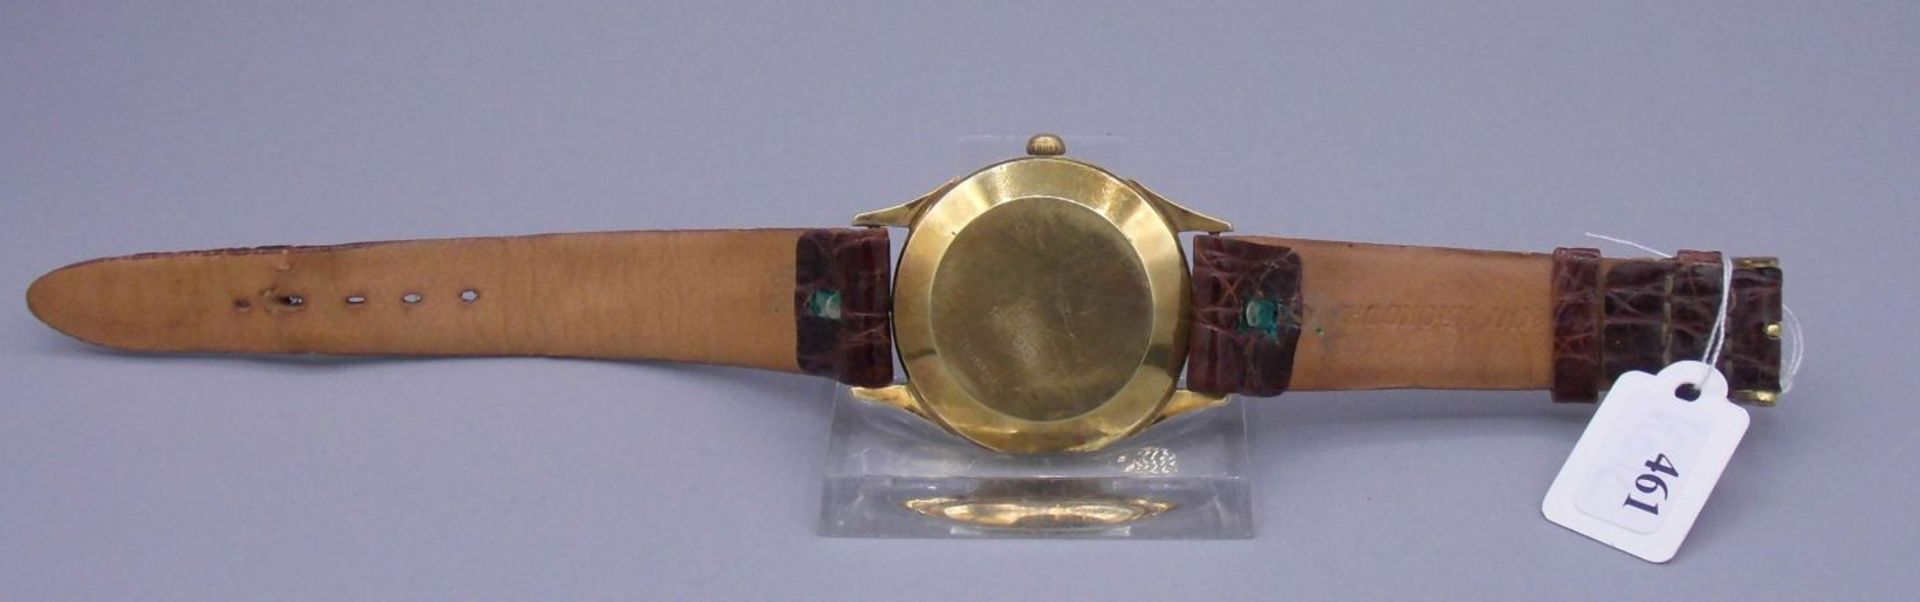 VINTAGE ARMBANDUHR DUGENA / wristwatch, Mitte 20. Jh., Automatik-Uhr, Gehäuse aus 585er / 14 kt - Bild 3 aus 4